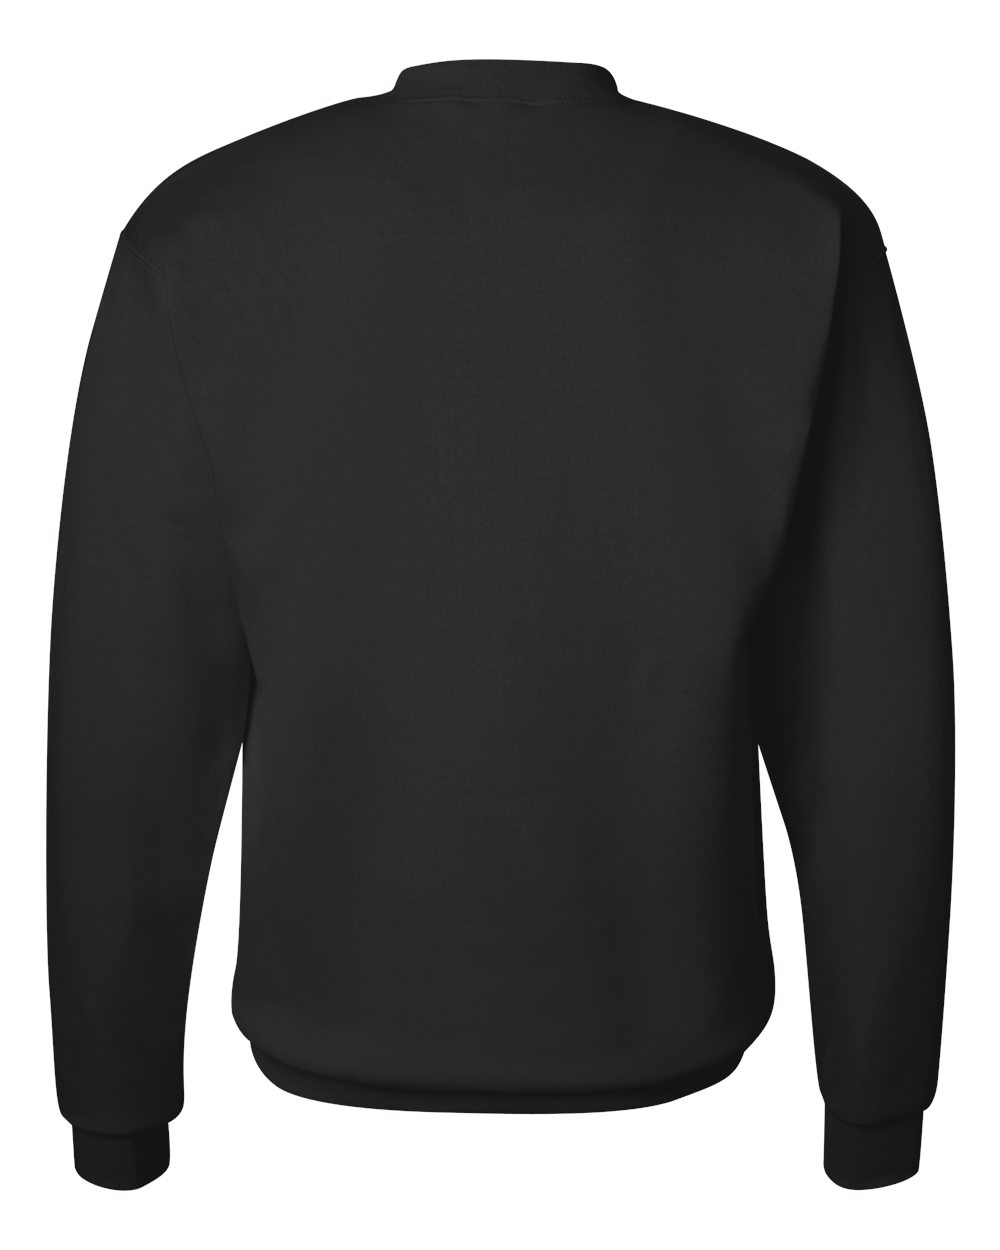 Hanes P1607 Color Chart - *DIGITAL DOWNLOAD* - Hanes Ecosmart 50/50  Crewneck Sweatshirts